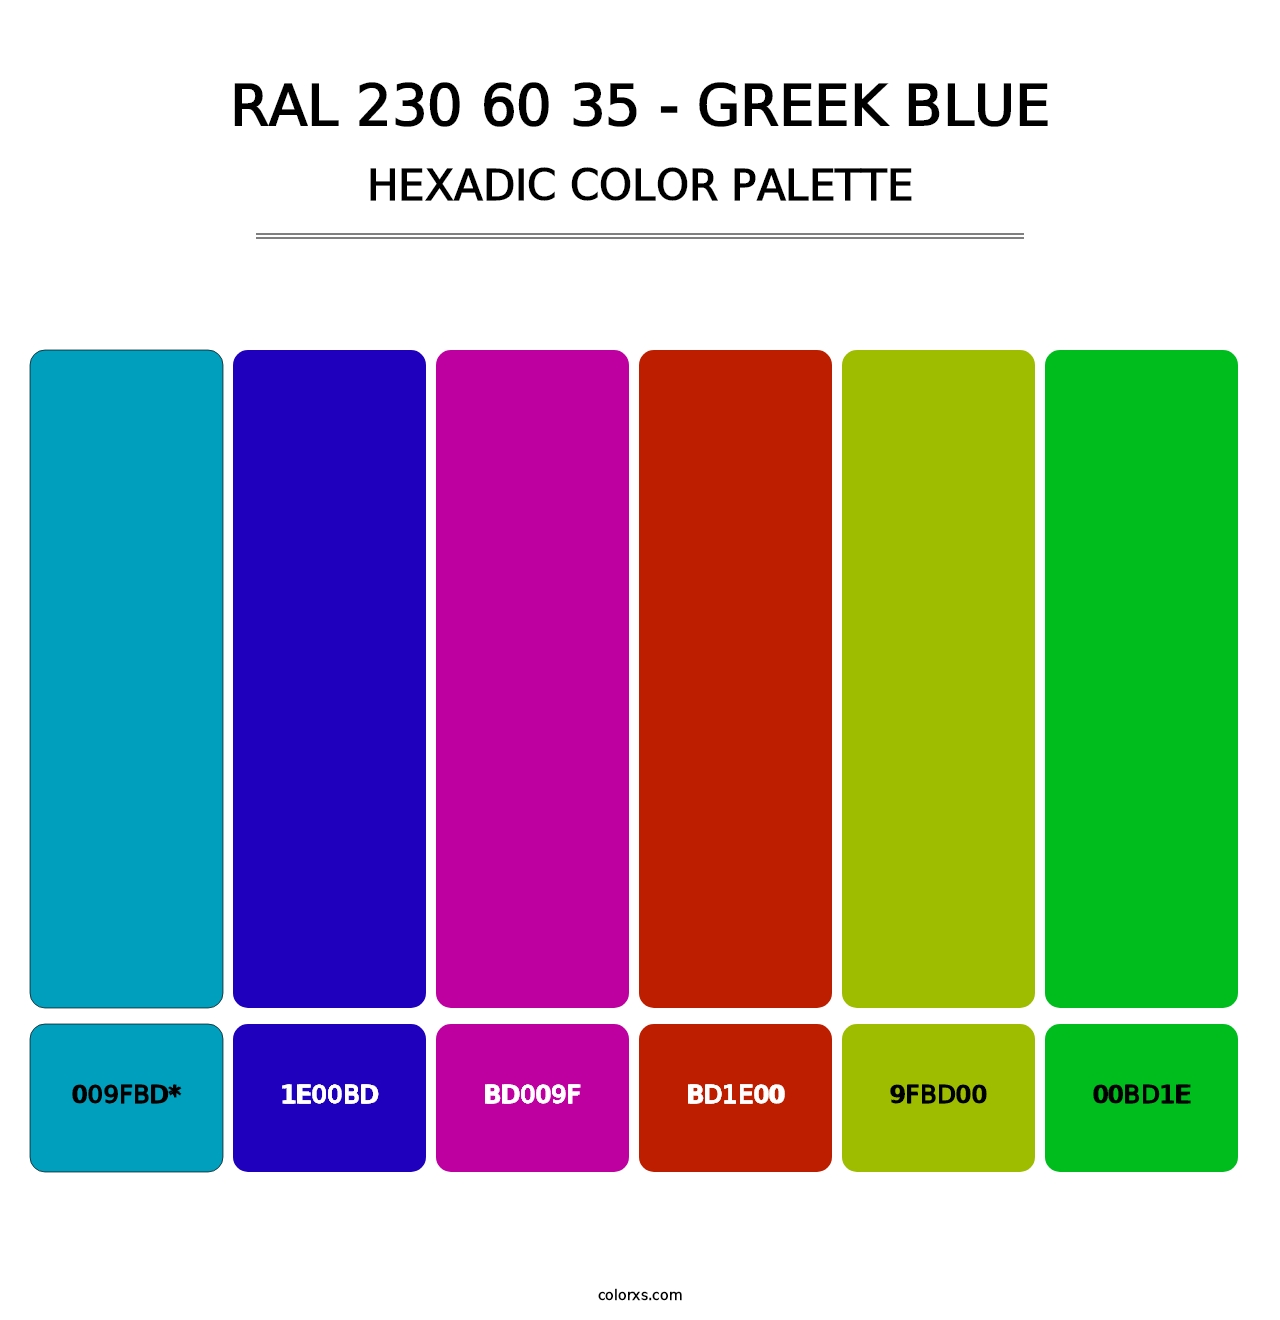 RAL 230 60 35 - Greek Blue - Hexadic Color Palette